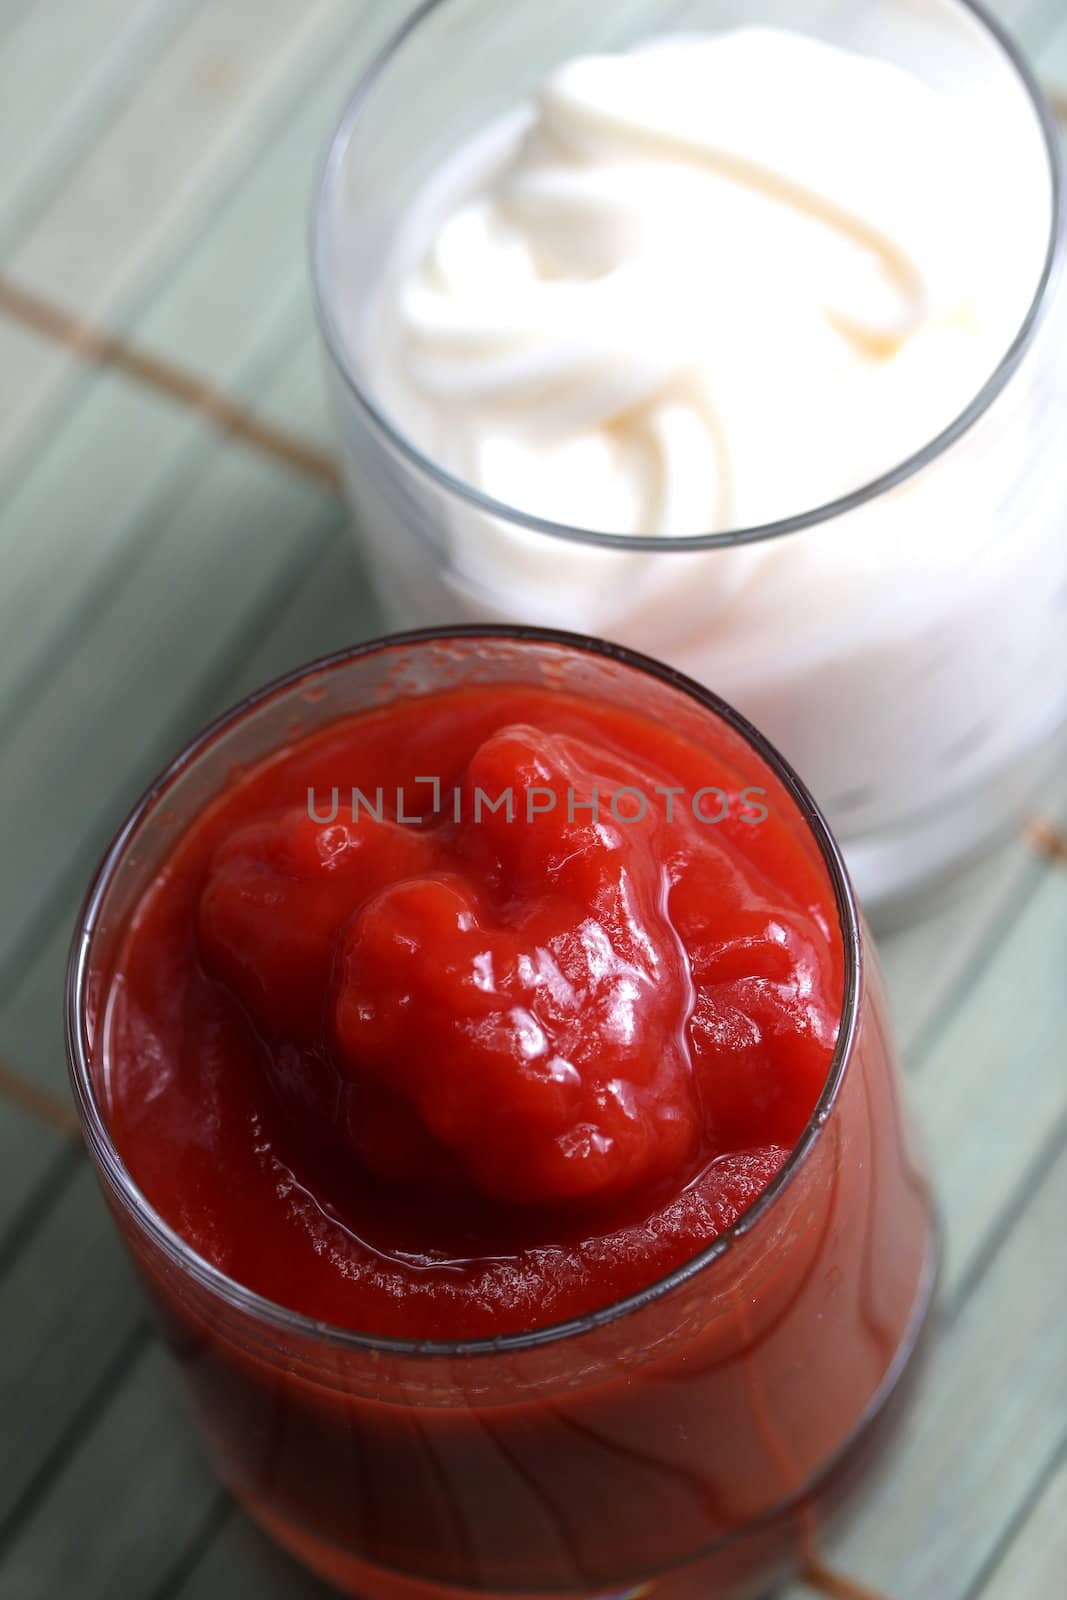 mayonnaise and ketchup by Teka77